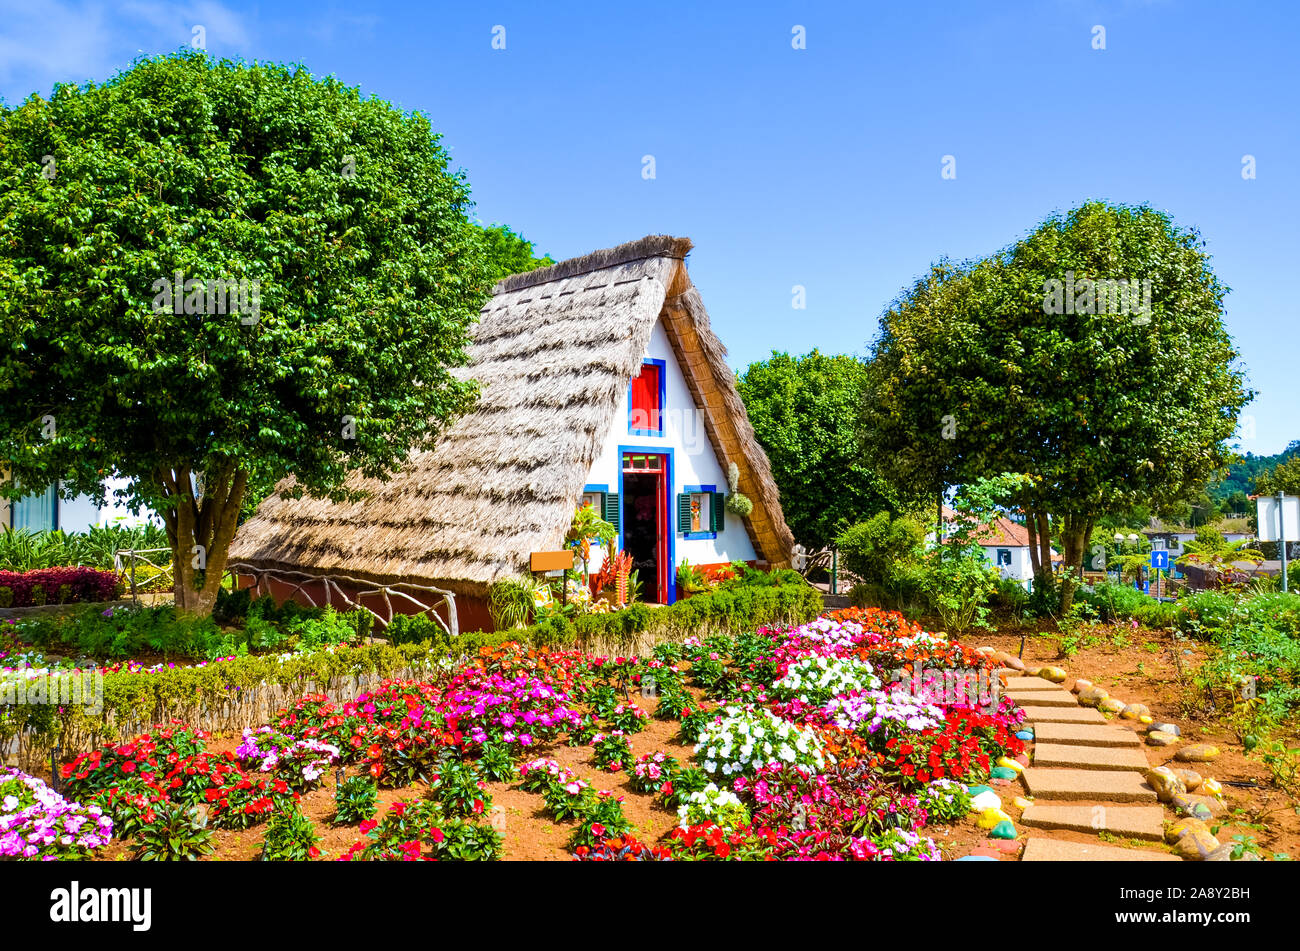 Des maisons traditionnelles en Santana, Madère, Portugal. Maisons en bois triangulaire, représentent une partie de patrimoine portugais. Jardin de devant avec de belles fleurs colorées. Monument touristique. Banque D'Images